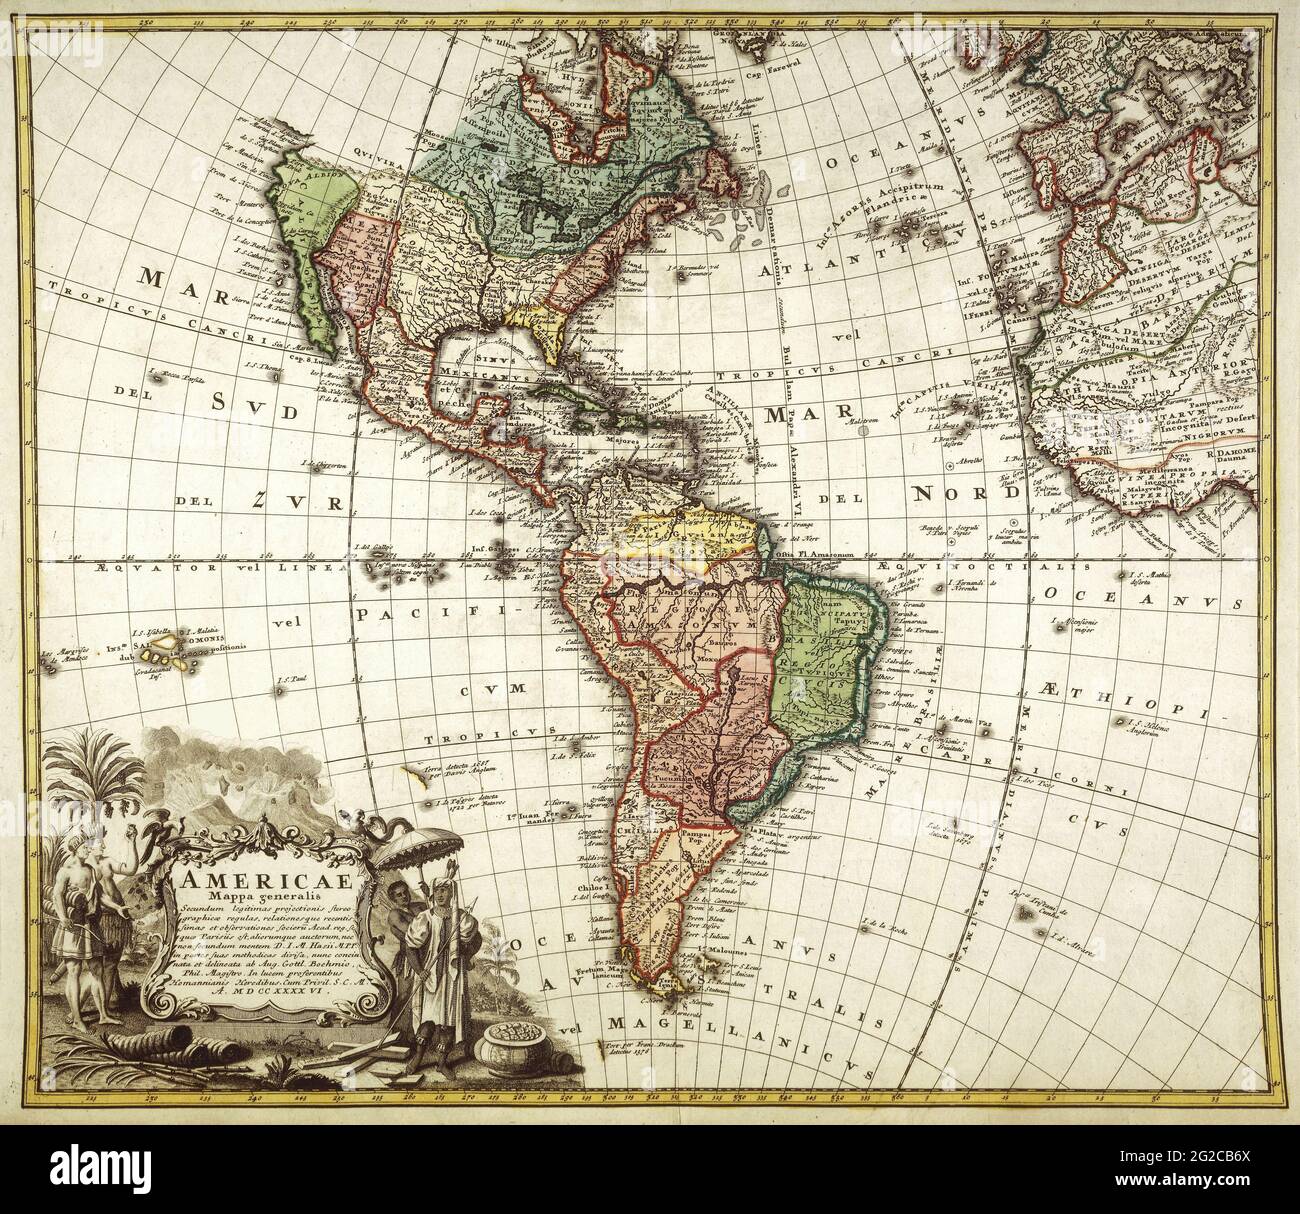 La carte des Amériques, la carte des Amériques, la carte des Amériques, la carte rétro des Amériques, la carte des Amériques, la carte des Amériques, la carte des Amériques, la carte de 1730 Banque D'Images